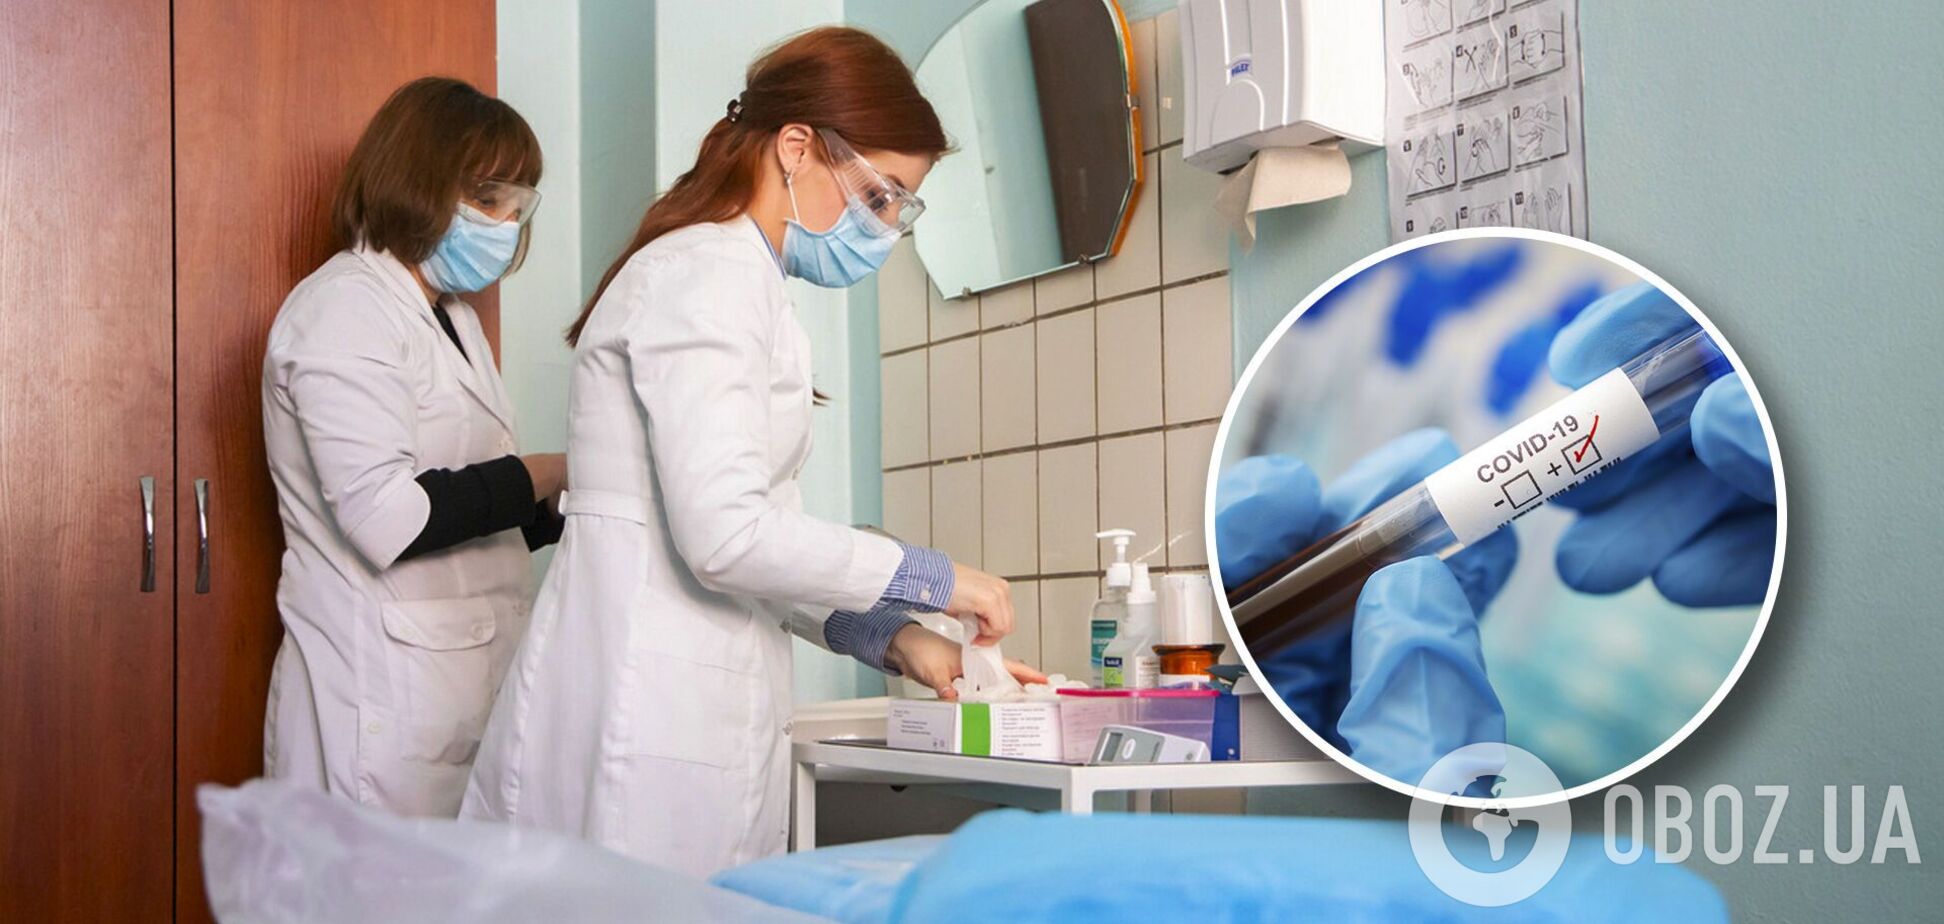 У Києві викинулися з вікна двоє хворих на COVID-19: як вірус пов'язаний із суїцидом і хто в зоні ризику